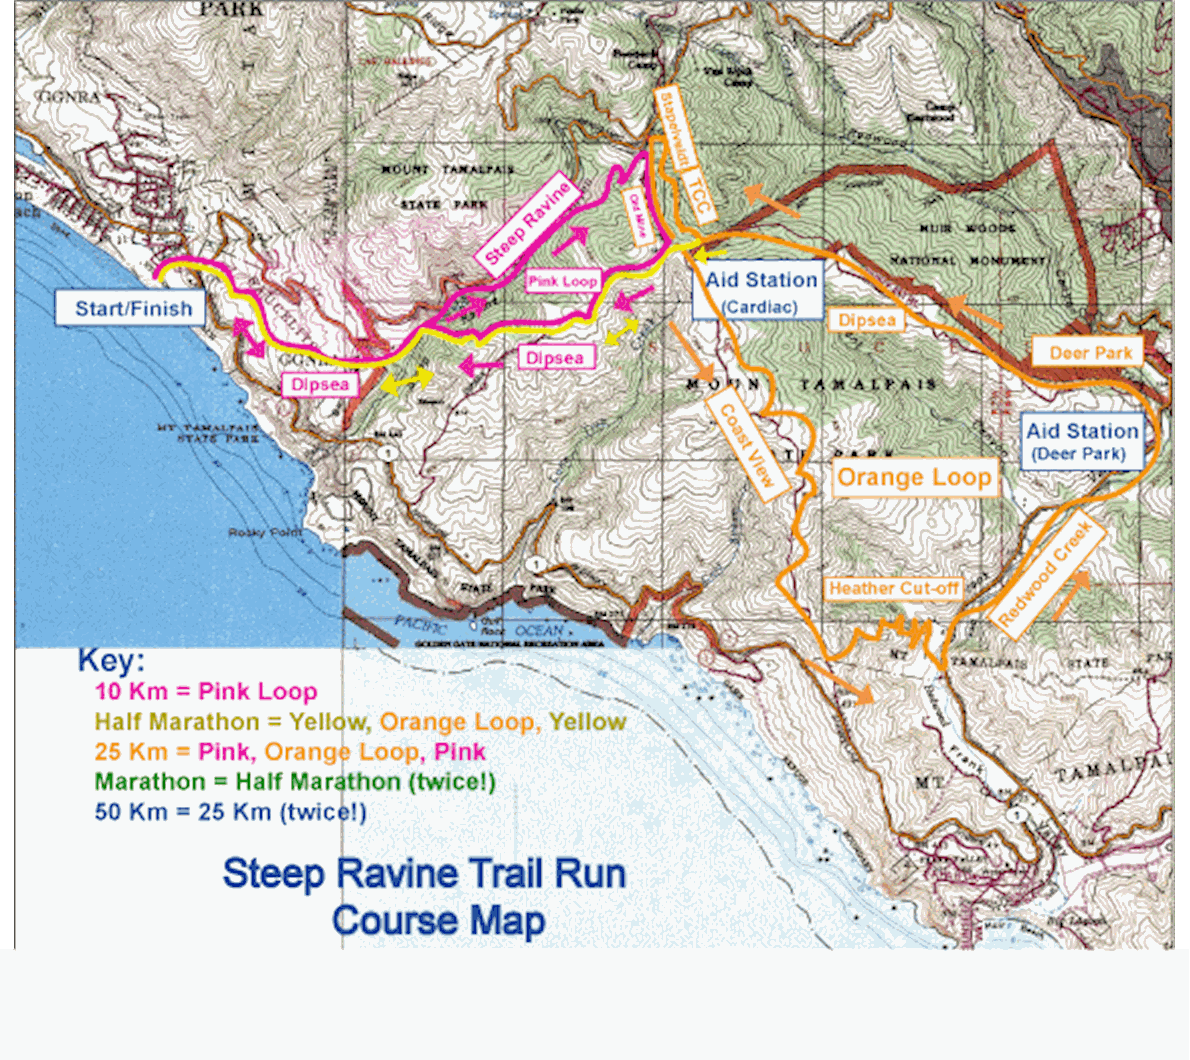 Steep Ravine Trail Run MAPA DEL RECORRIDO DE